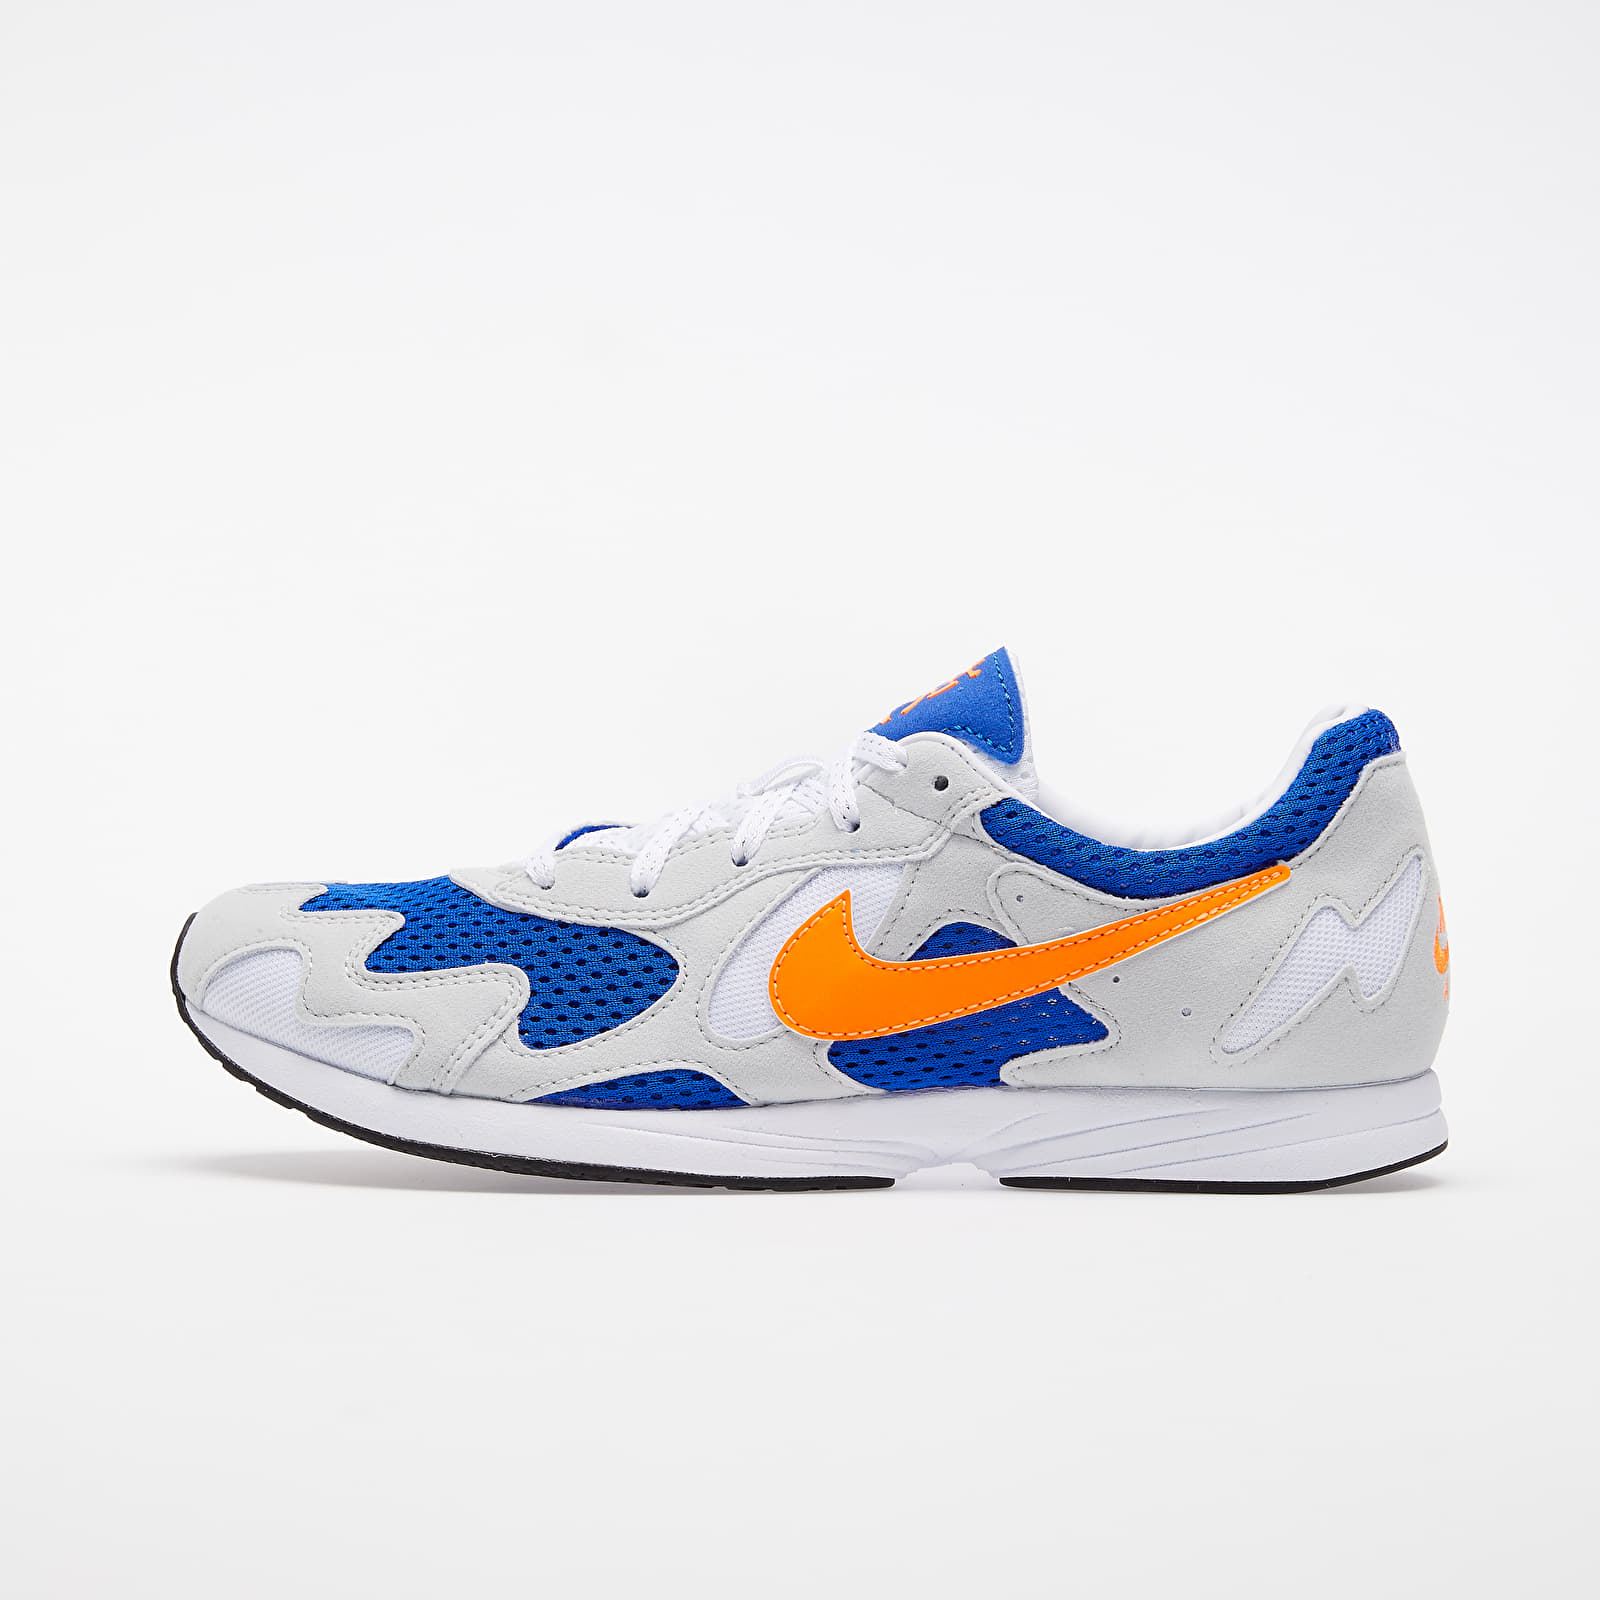 Men's shoes Nike Air Streak Lite White/ Total Orange-Racer Blue-Black